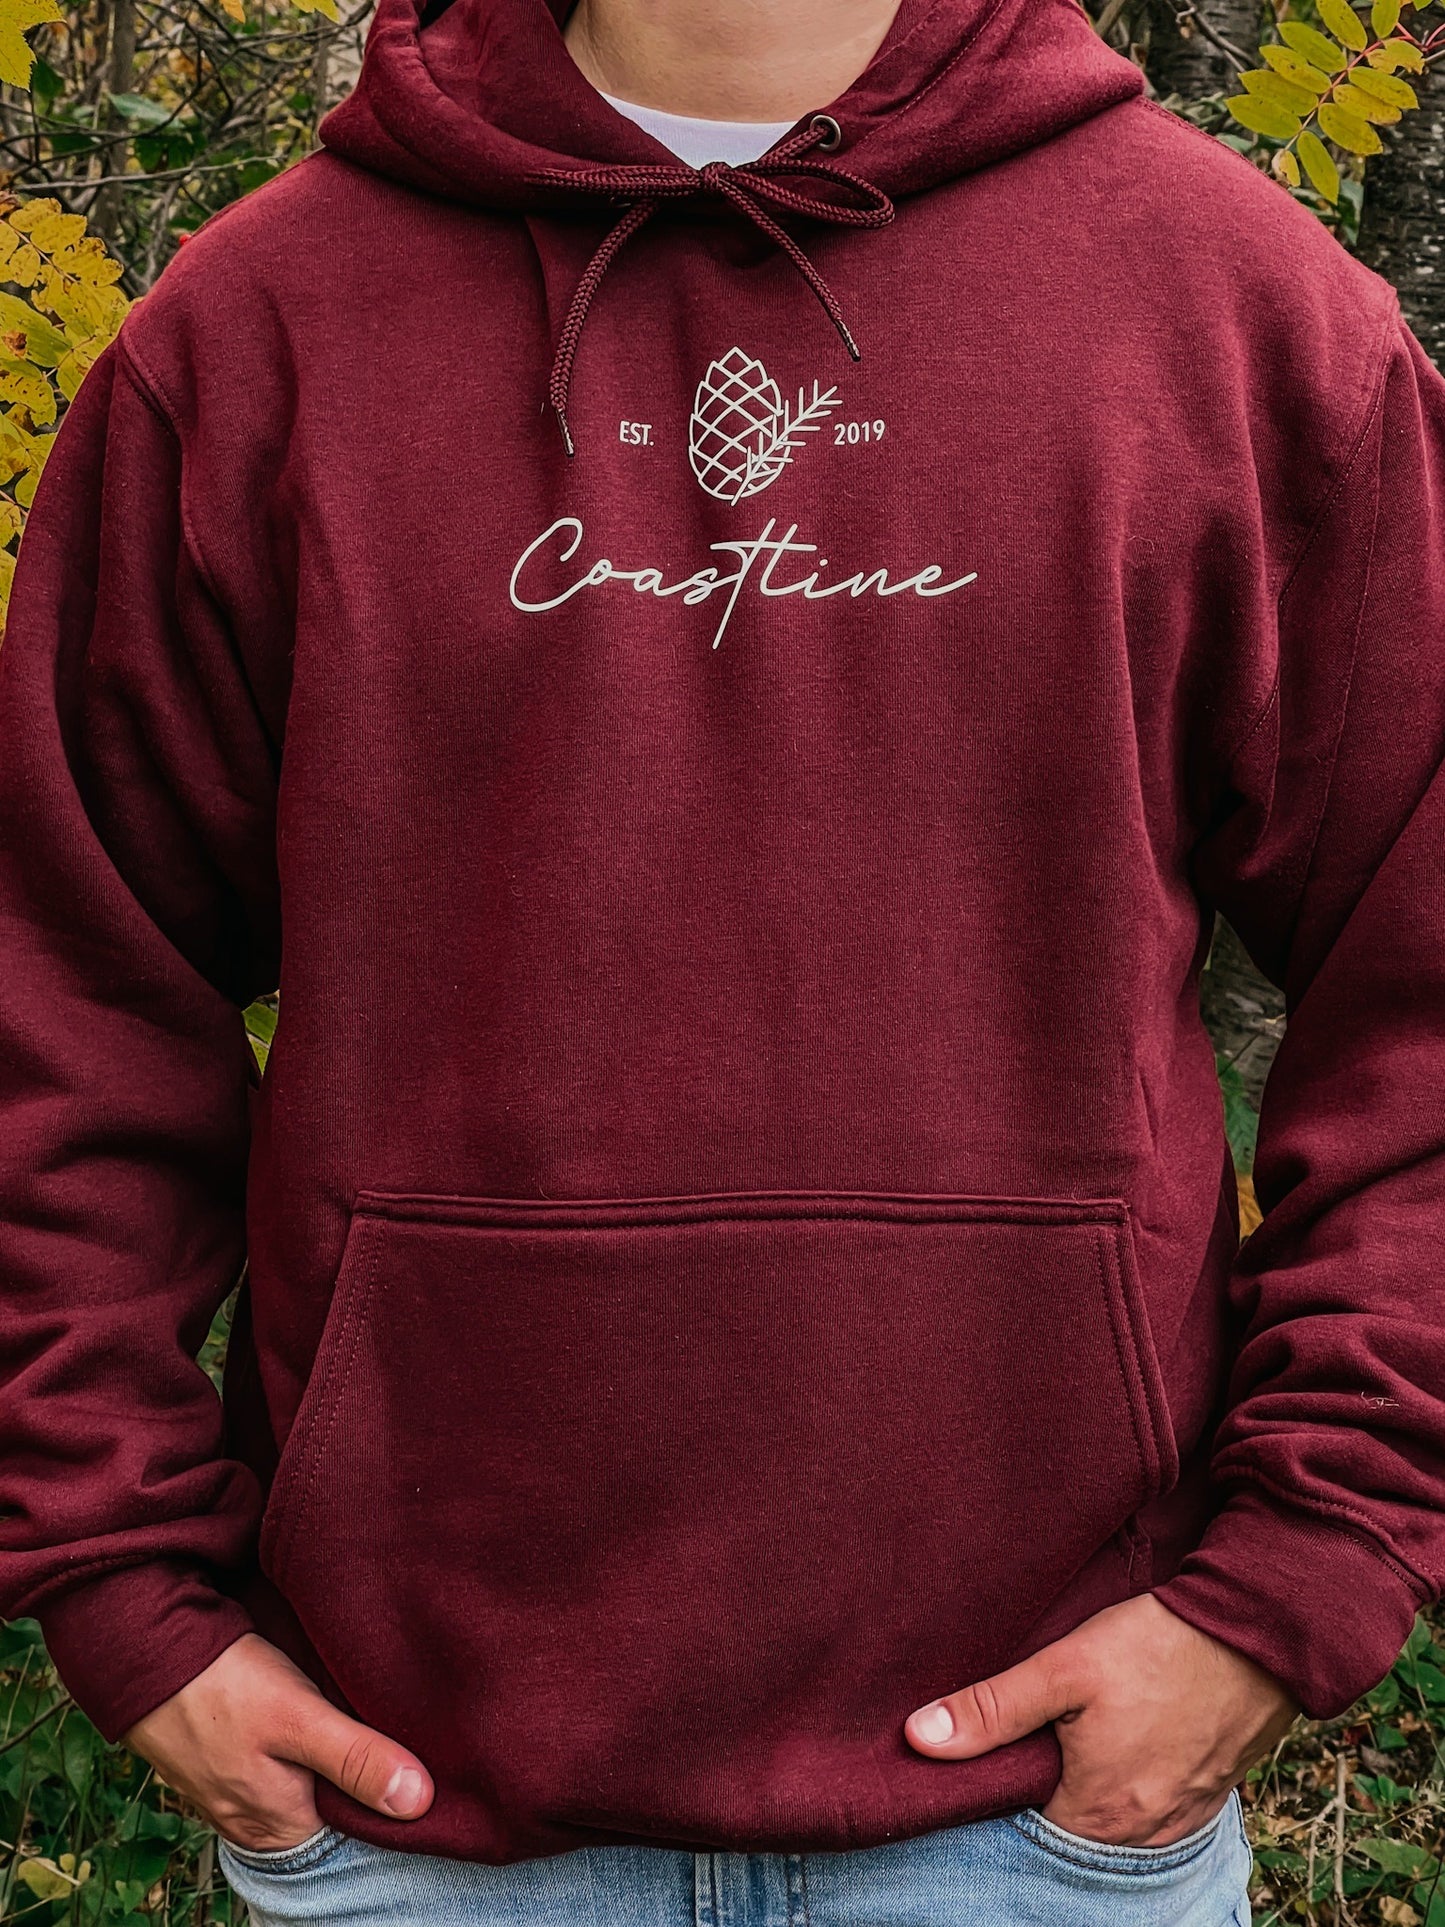 Coastpine hoodie - Burgundy